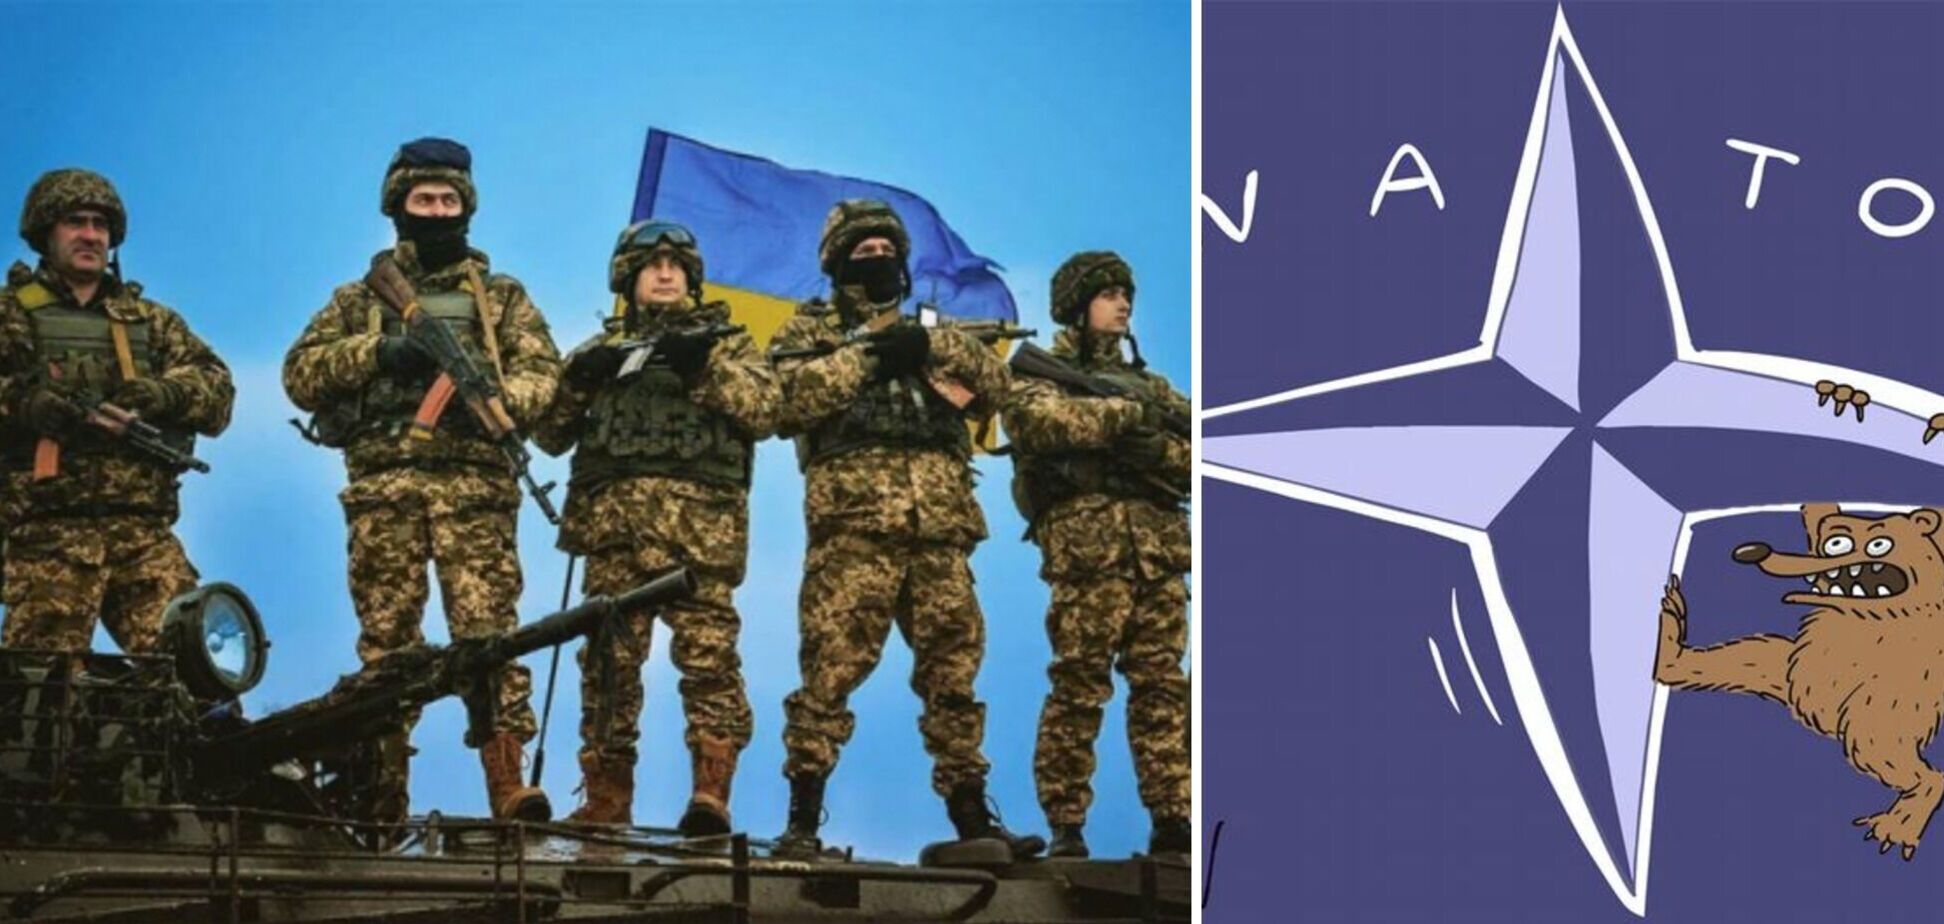 Чи готовий Кремль воювати з НАТО?